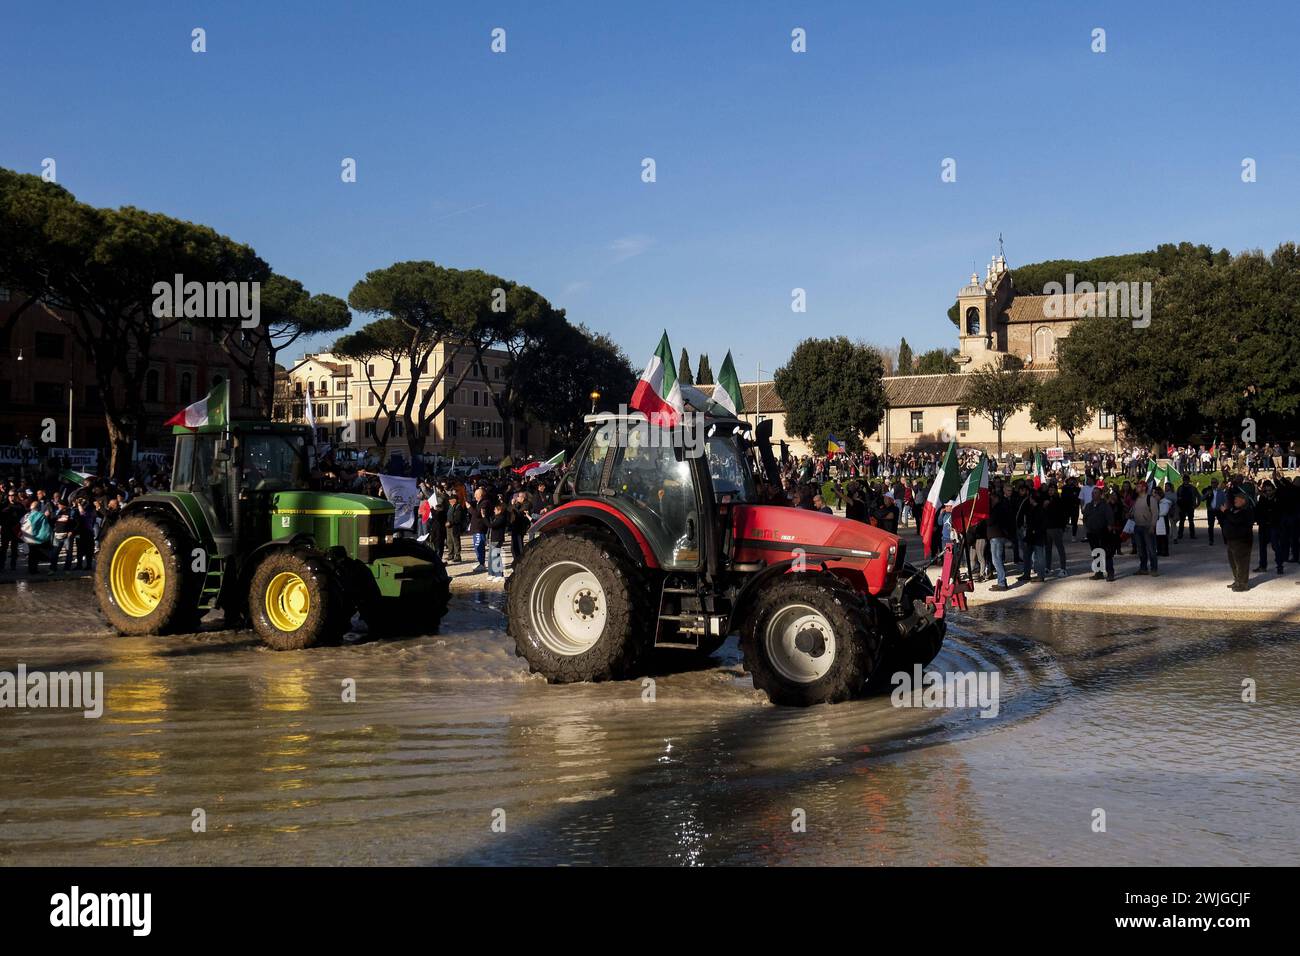 Notizie - dimostrazioni degli agricoltori a Roma gli agricoltori organizzano dimostrazioni in tutta Italia per settimane per chiedere tasse più basse sul carburante, prezzi migliori per i loro prodotti, e un allentamento delle normative ambientali dell'UE che, secondo loro, rendono più difficile competere con prodotti stranieri meno costosi. Oggi, 15 febbraio 2024, si sono riuniti in una manifestazione nazionale a roma al circo massimo e al campidoglio.& XA Roma Italia Copyright: XAntonioxBalascox/xLiveMediax LPN 1237666 Foto Stock